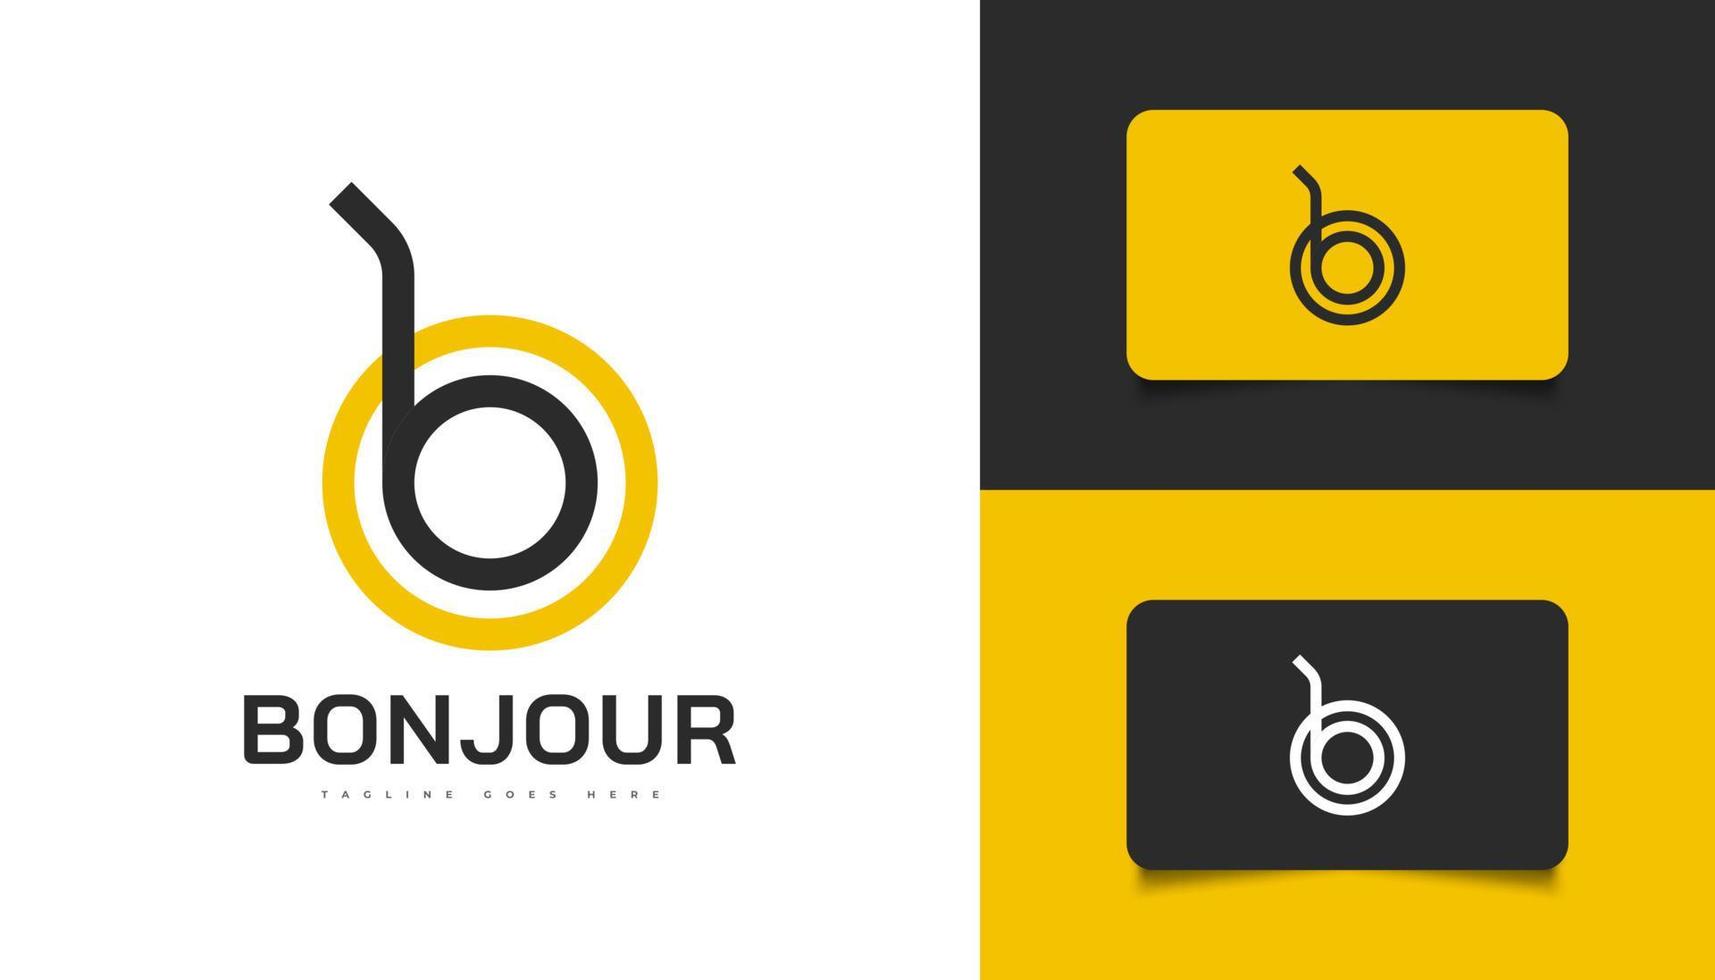 modern och minimalistisk bokstav b och o logotypdesign i svart och gult. abstrakt mall för bo -logotyp vektor